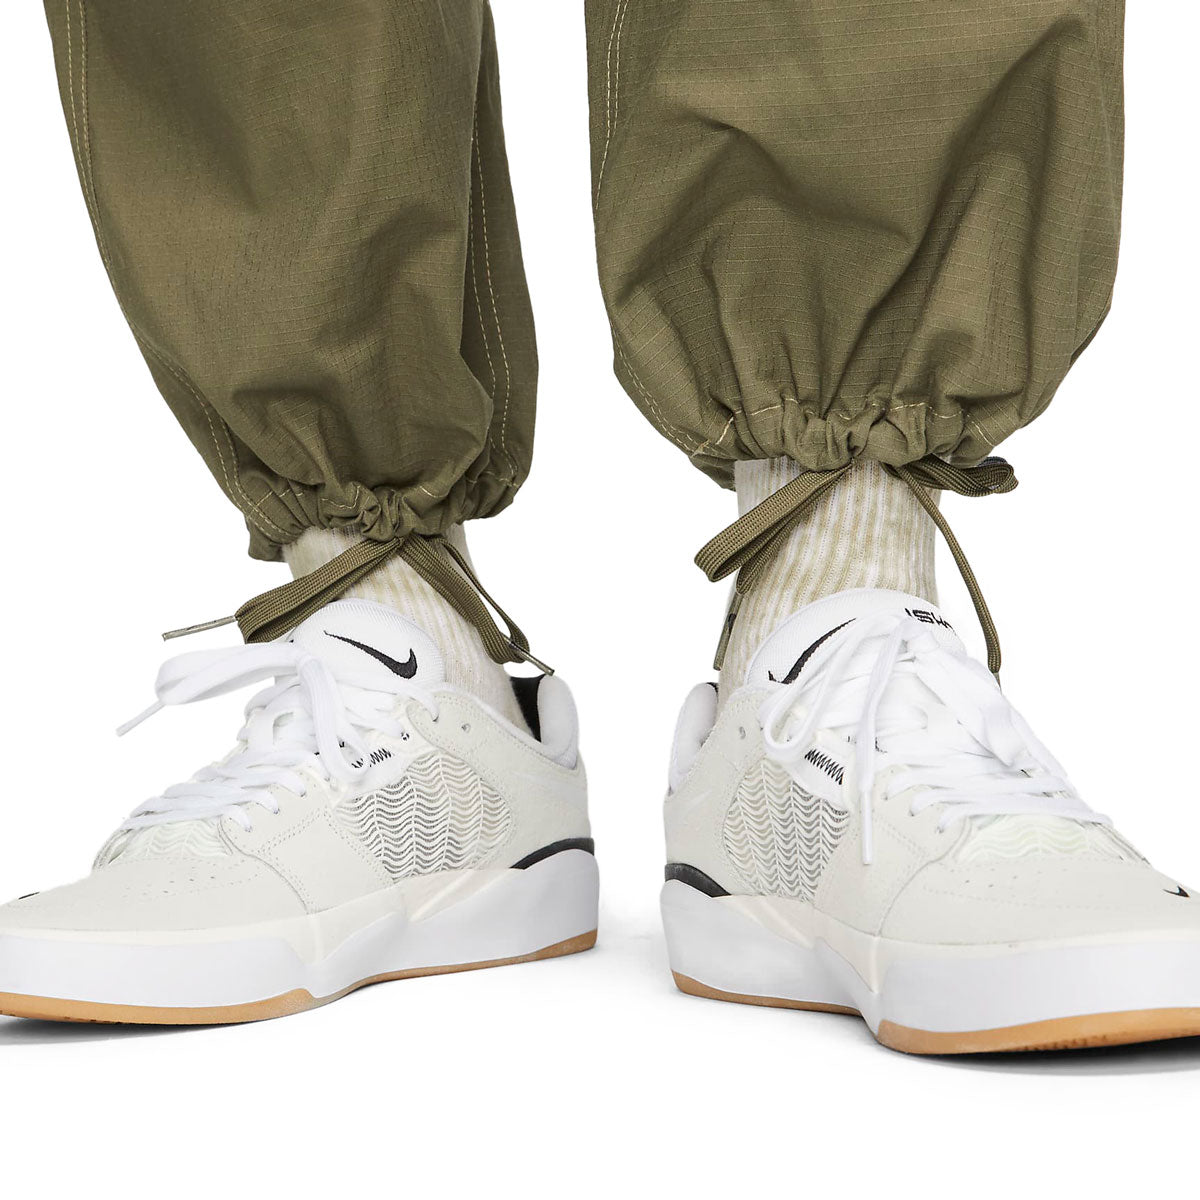 Nike SB Kearny Cargo Pants - Medium Olive/White image 5